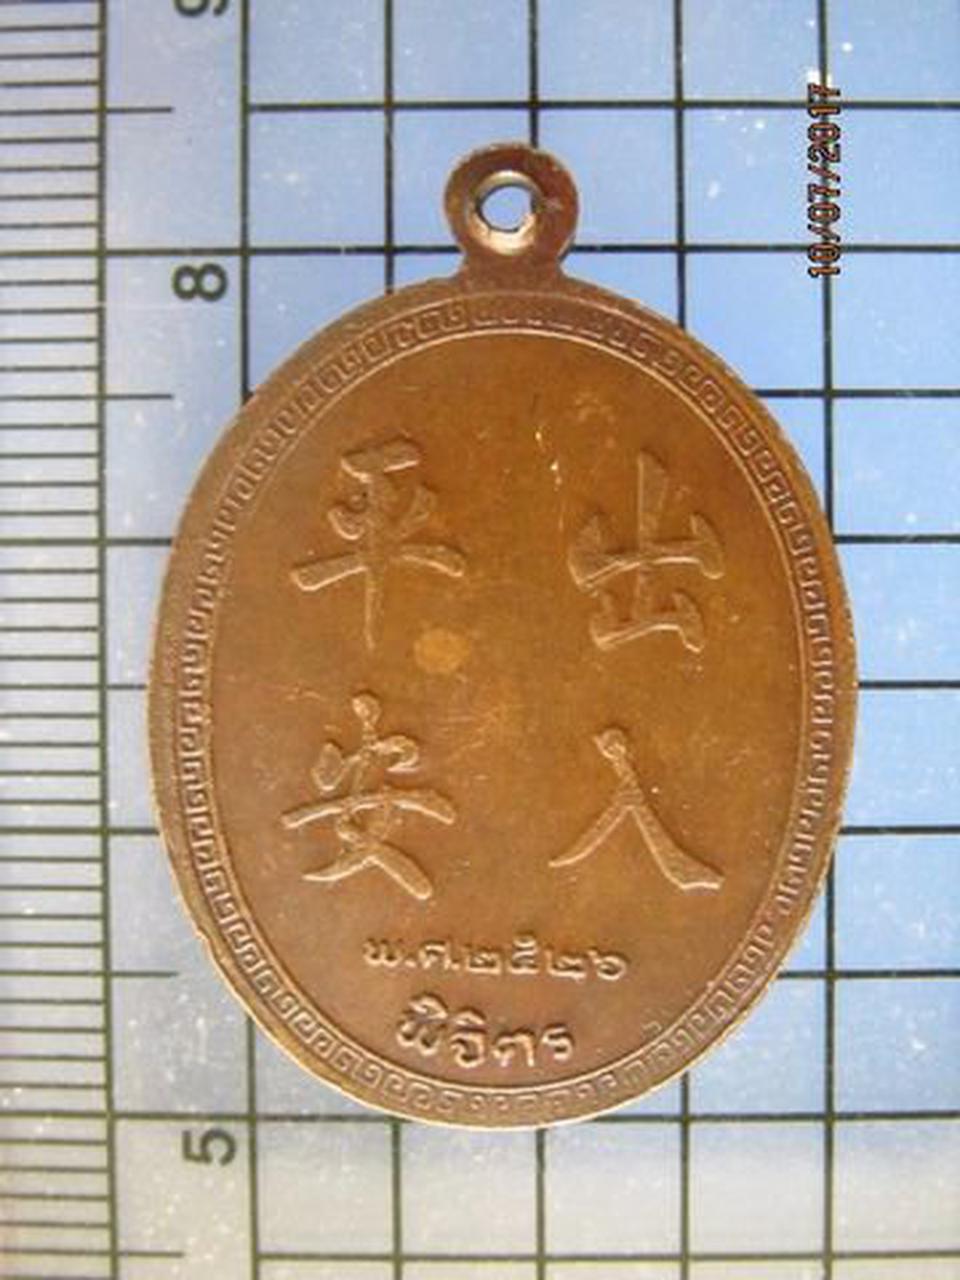 4417 เหรียญ ปุ่นเท่ากง ปี 2526 หลังอักษรจีน เนื้อทองแดง จ.พิ รูปที่ 1